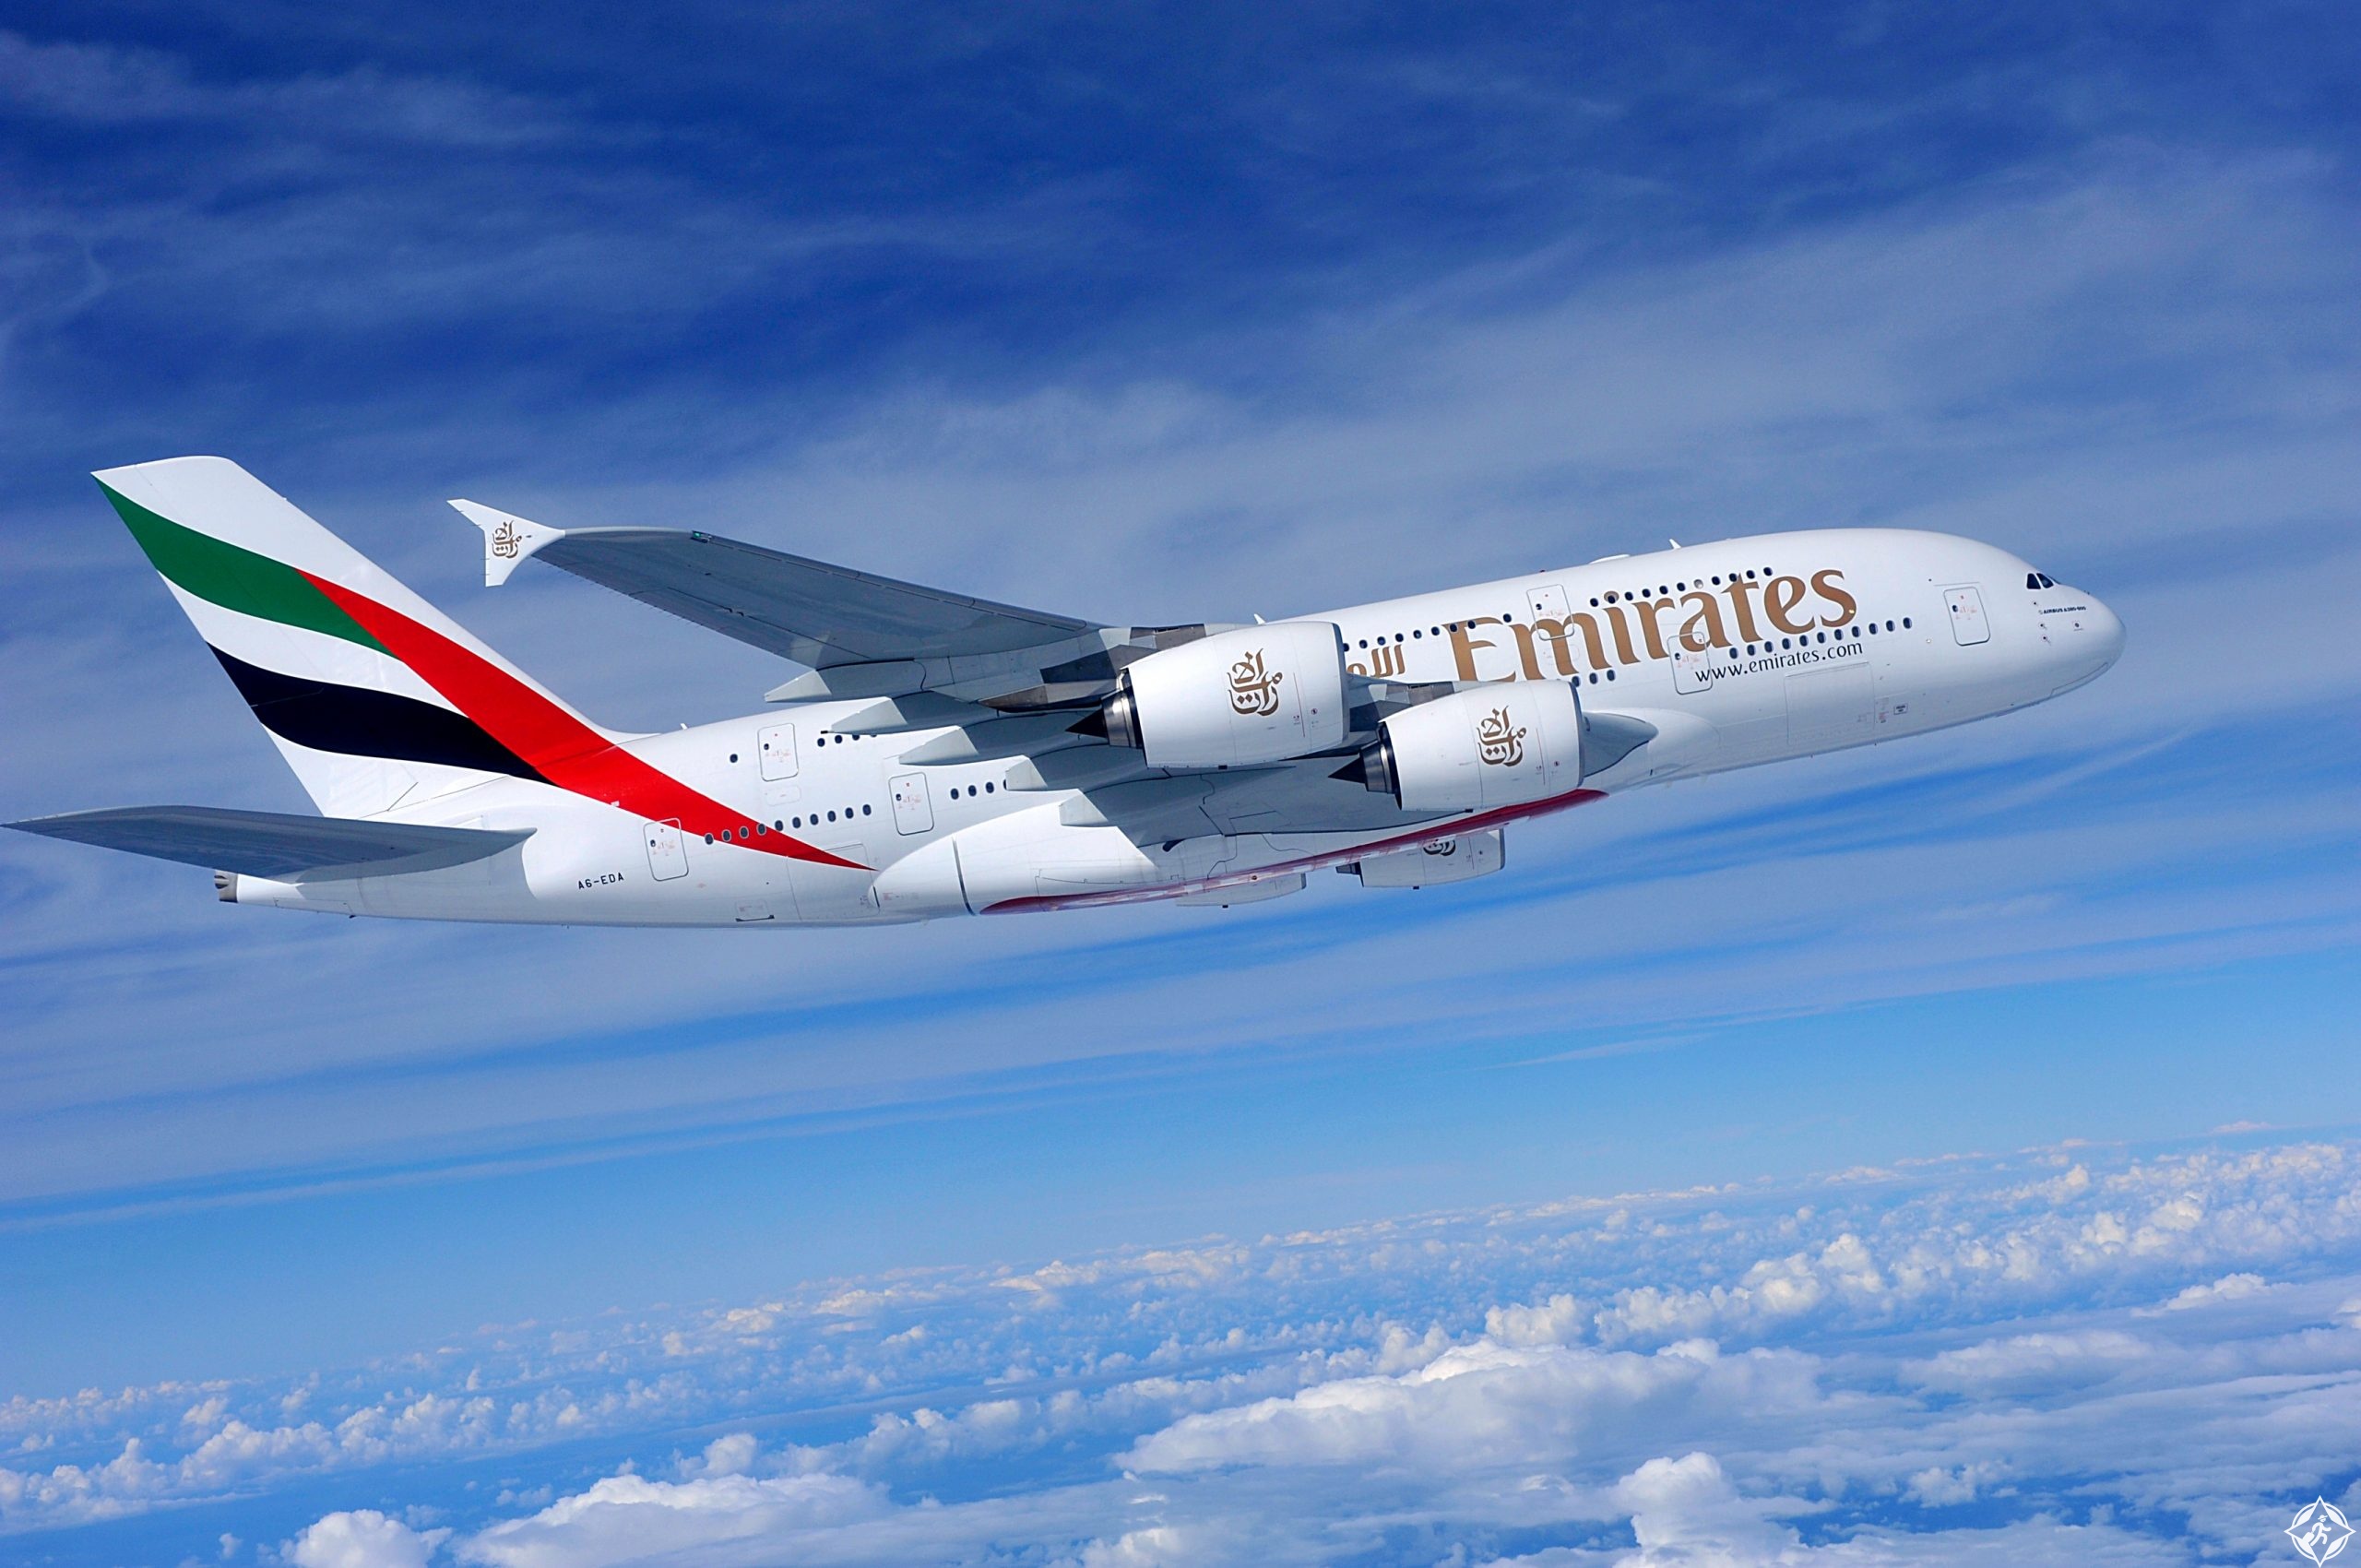 طيران-الإمارات-تعيد-تشغيل-العملاقة-إيرباص-a380-لخدمة-المغرب